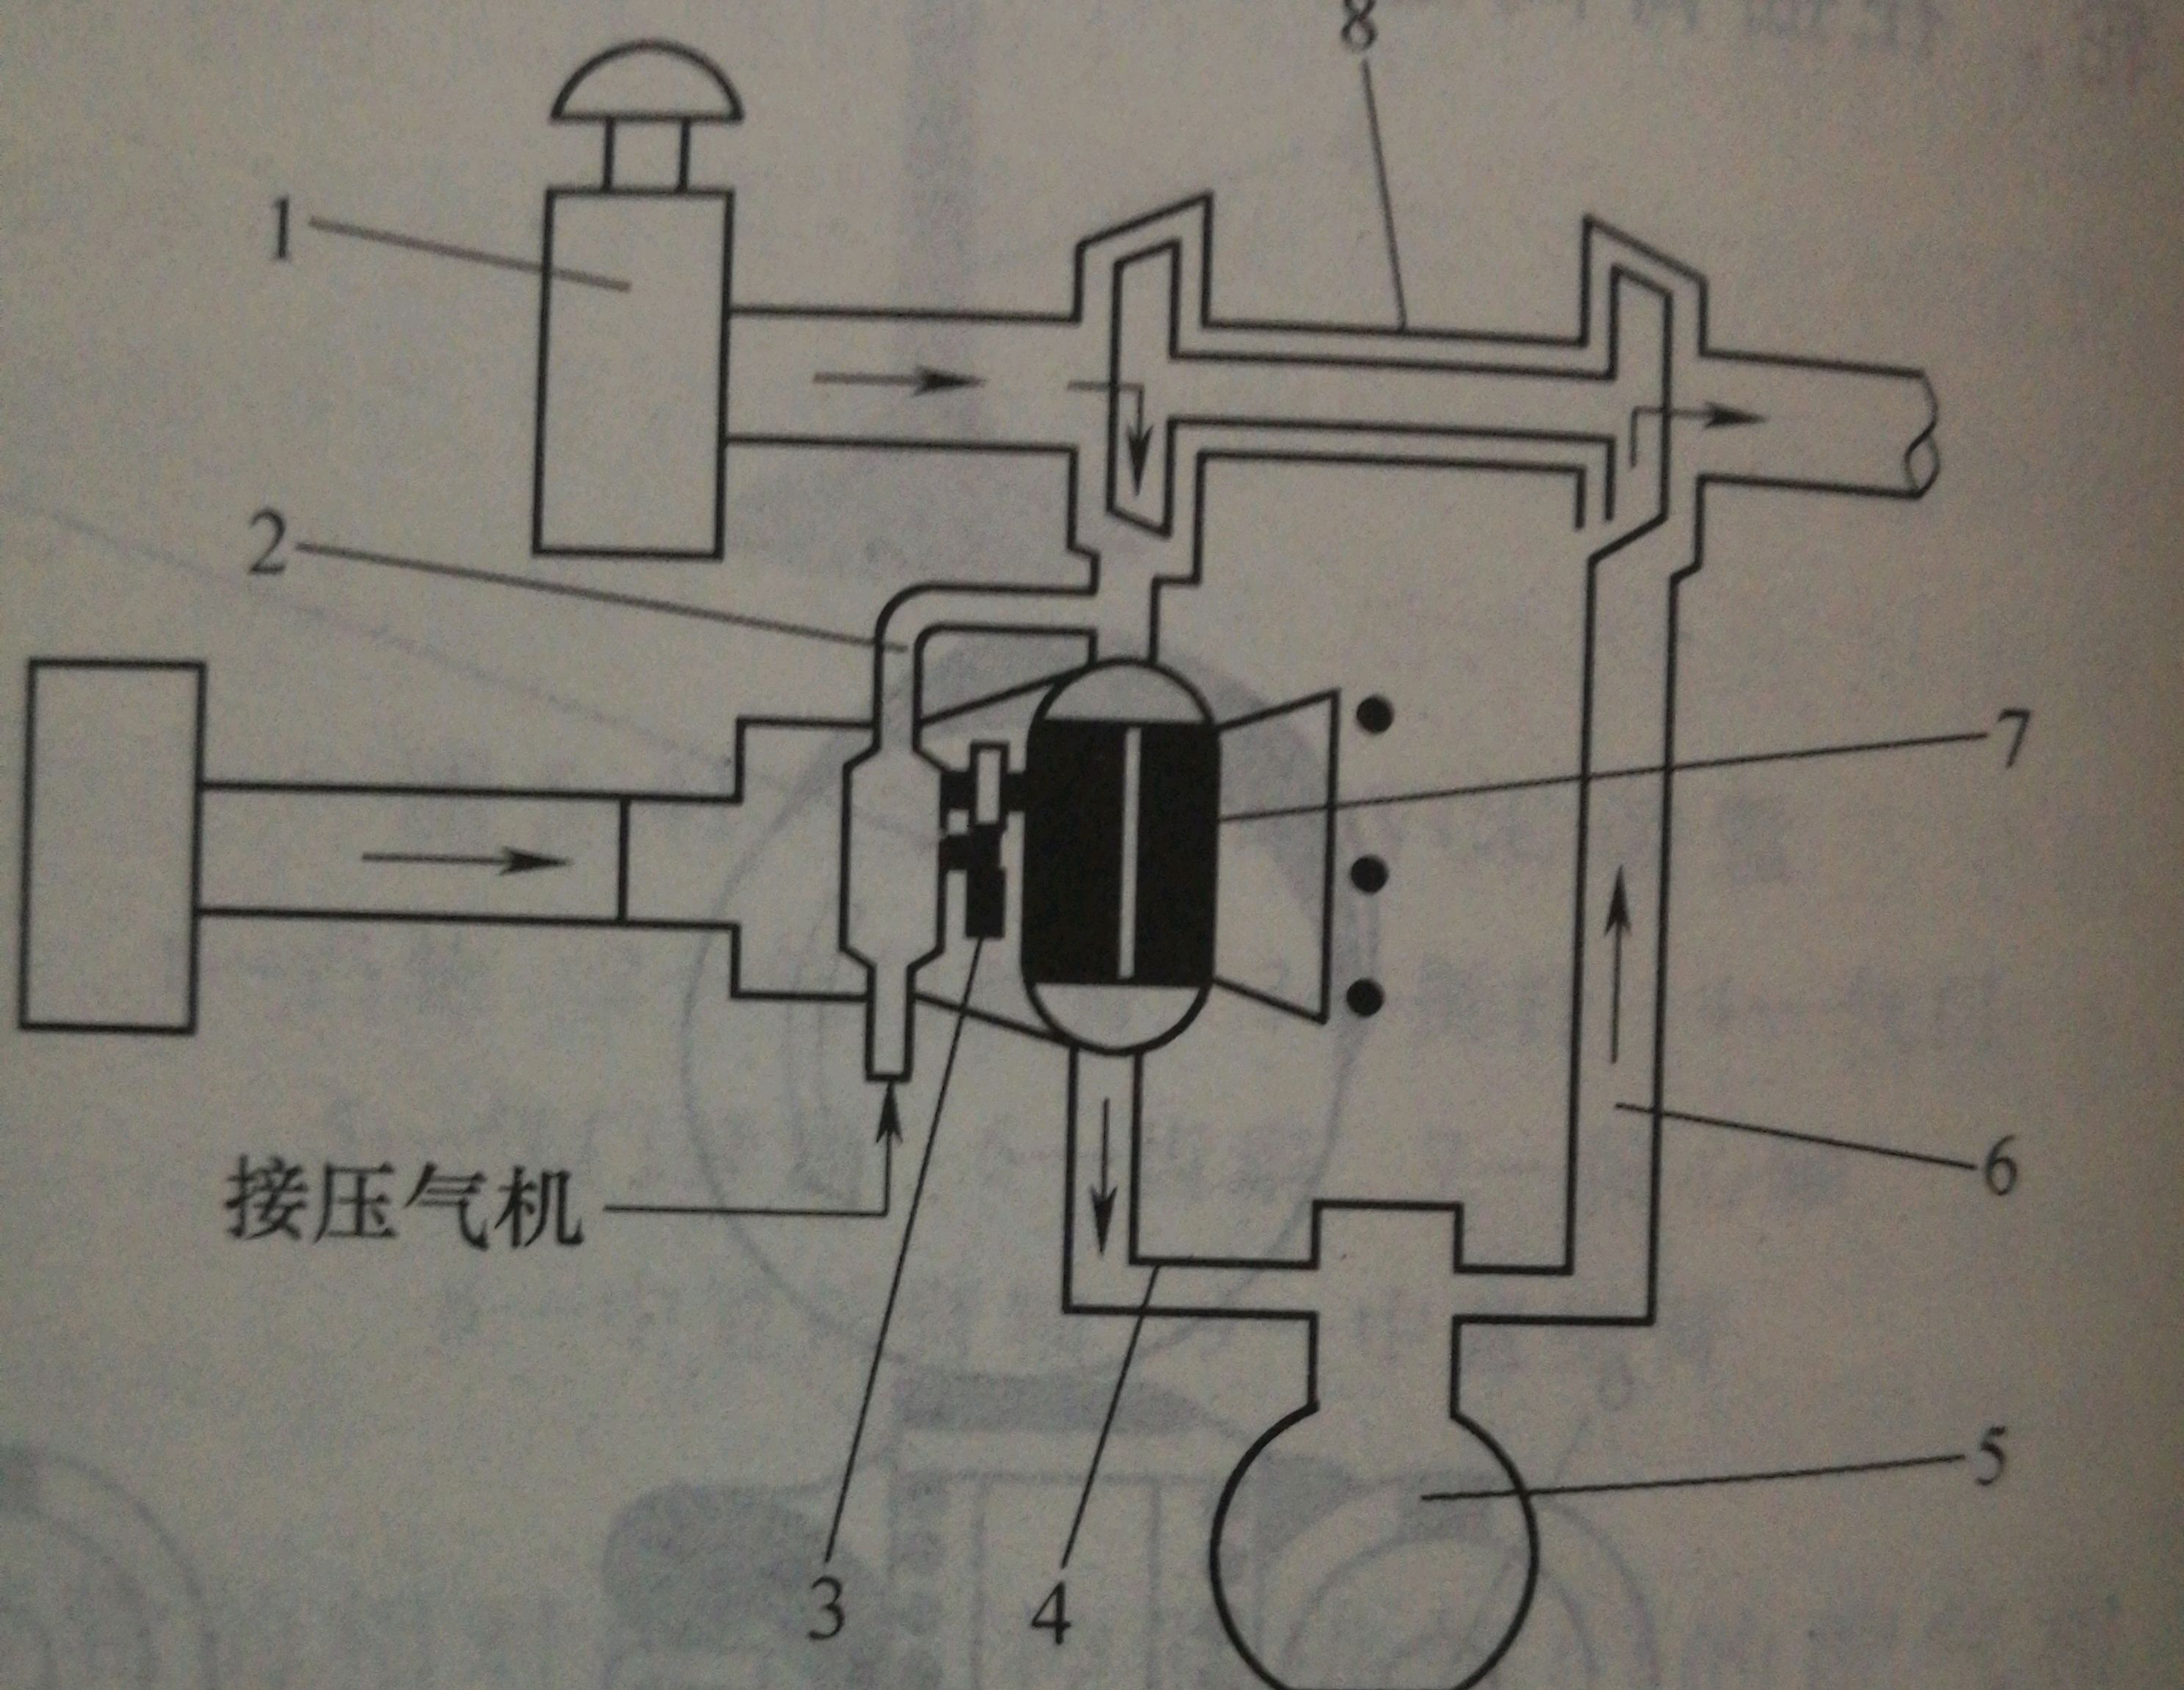 这是一张废气涡轮增压系统的组成图